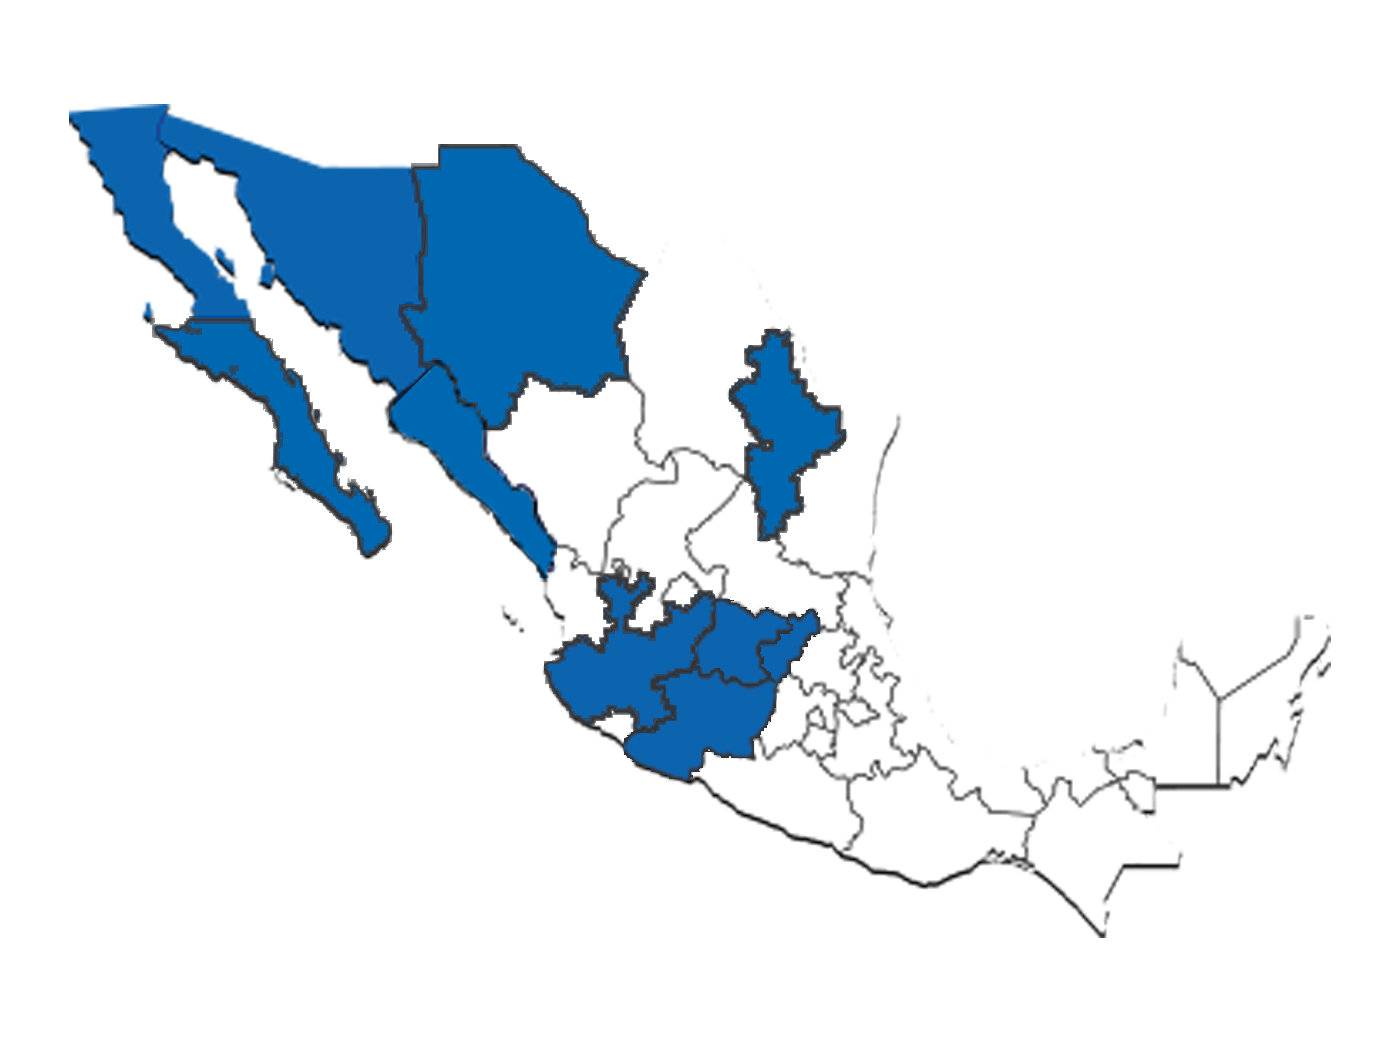 Mapa de México con los estados donde ARCO tiene presencia en azul.